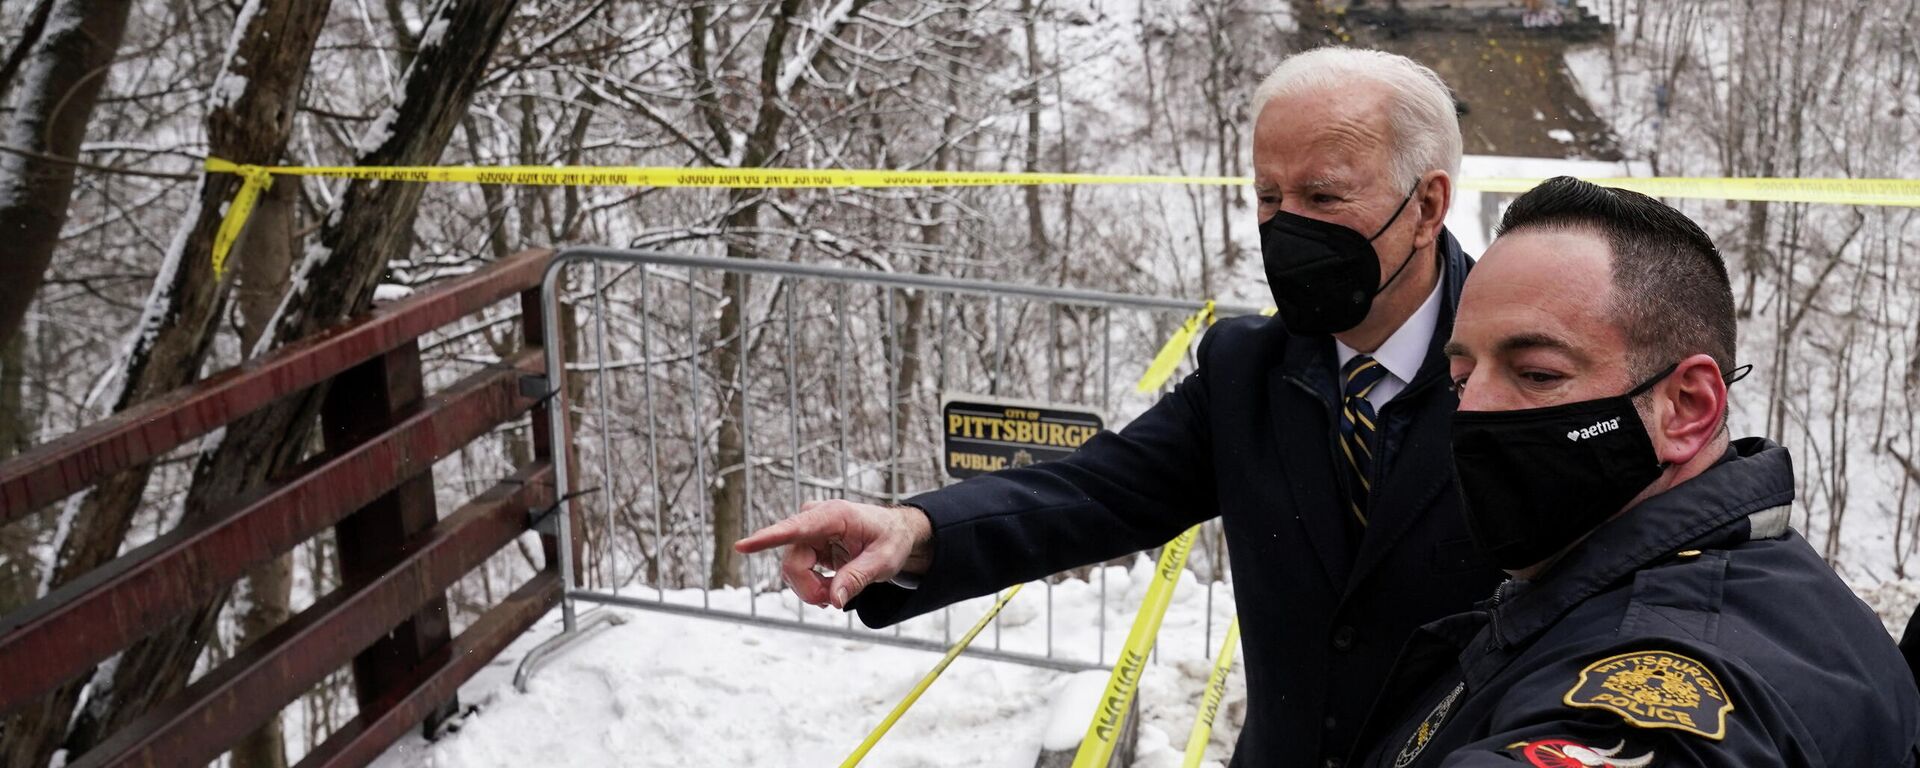 O presidente dos EUA, Joe Biden, fala com socorristas ao visitar local do desabamento de uma ponte, antes de participar de evento agendado em Pittsburgh, na Pensilvânia, nos EUA, em 28 de janeiro de 2022 - Sputnik Brasil, 1920, 28.01.2022